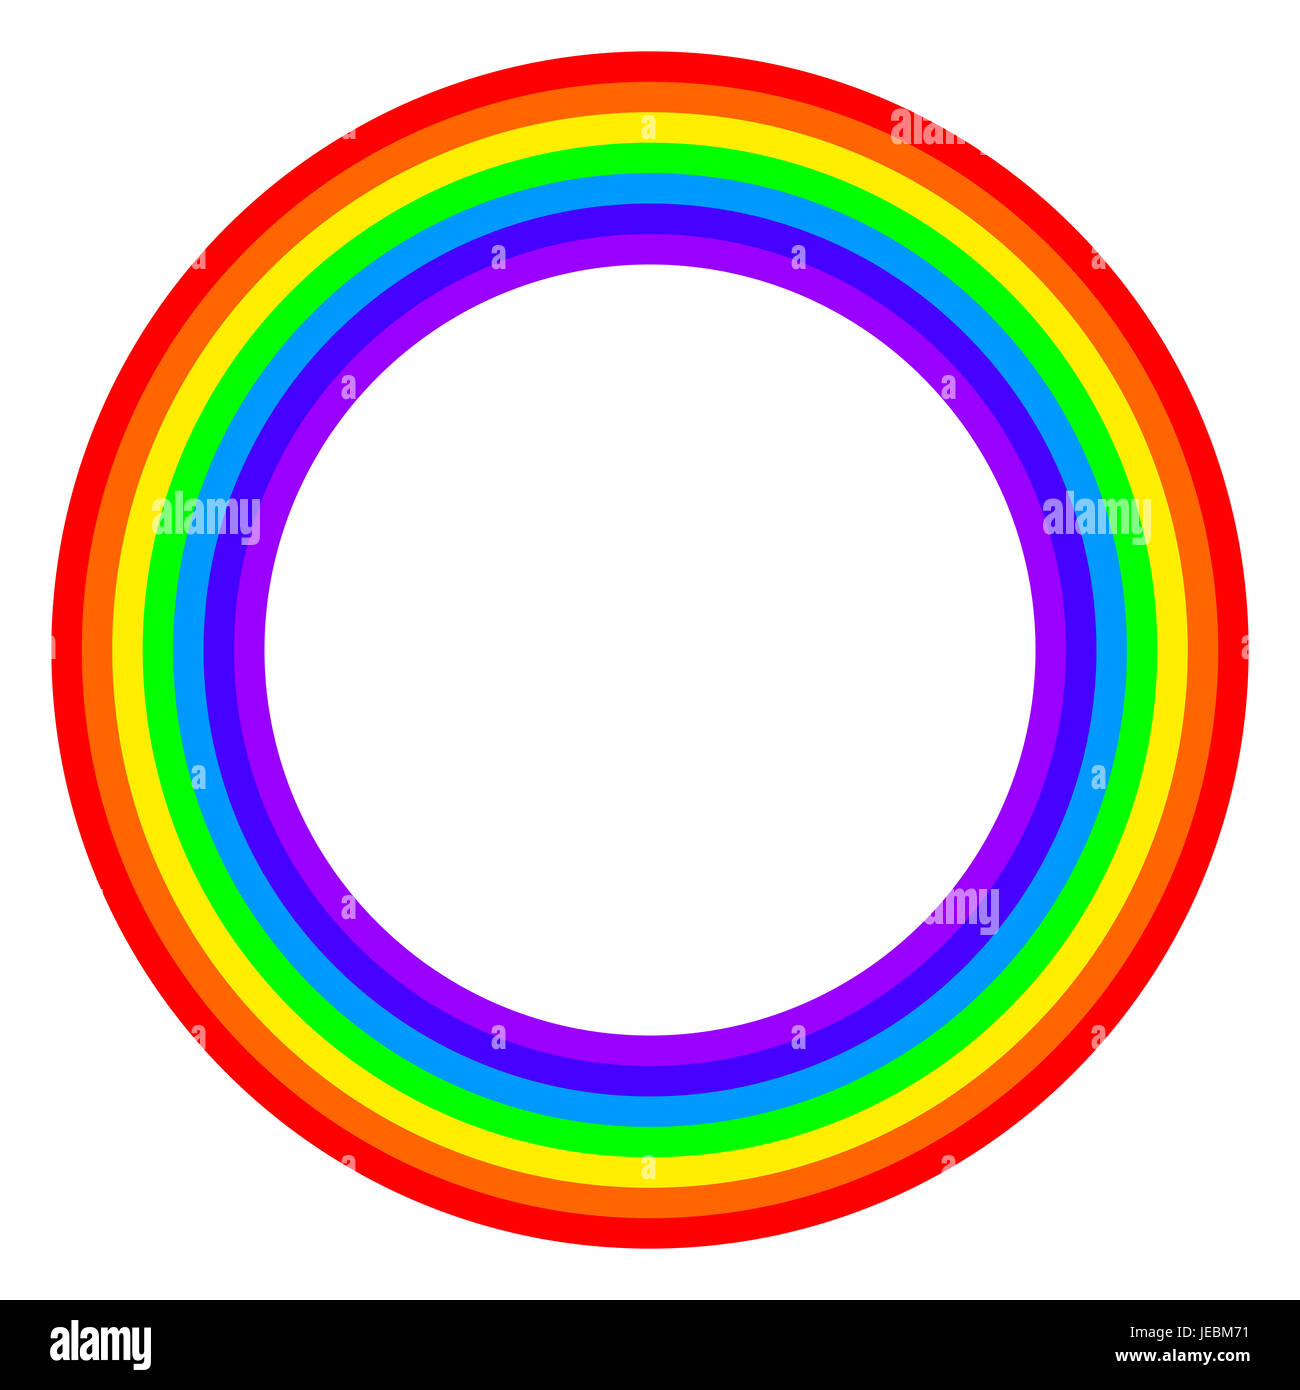 Kreis Regenbogenspektrum gefärbt. Ring mit Regenbogen-Bands in sieben Farben des Spektrums und sichtbares Licht. Stockfoto